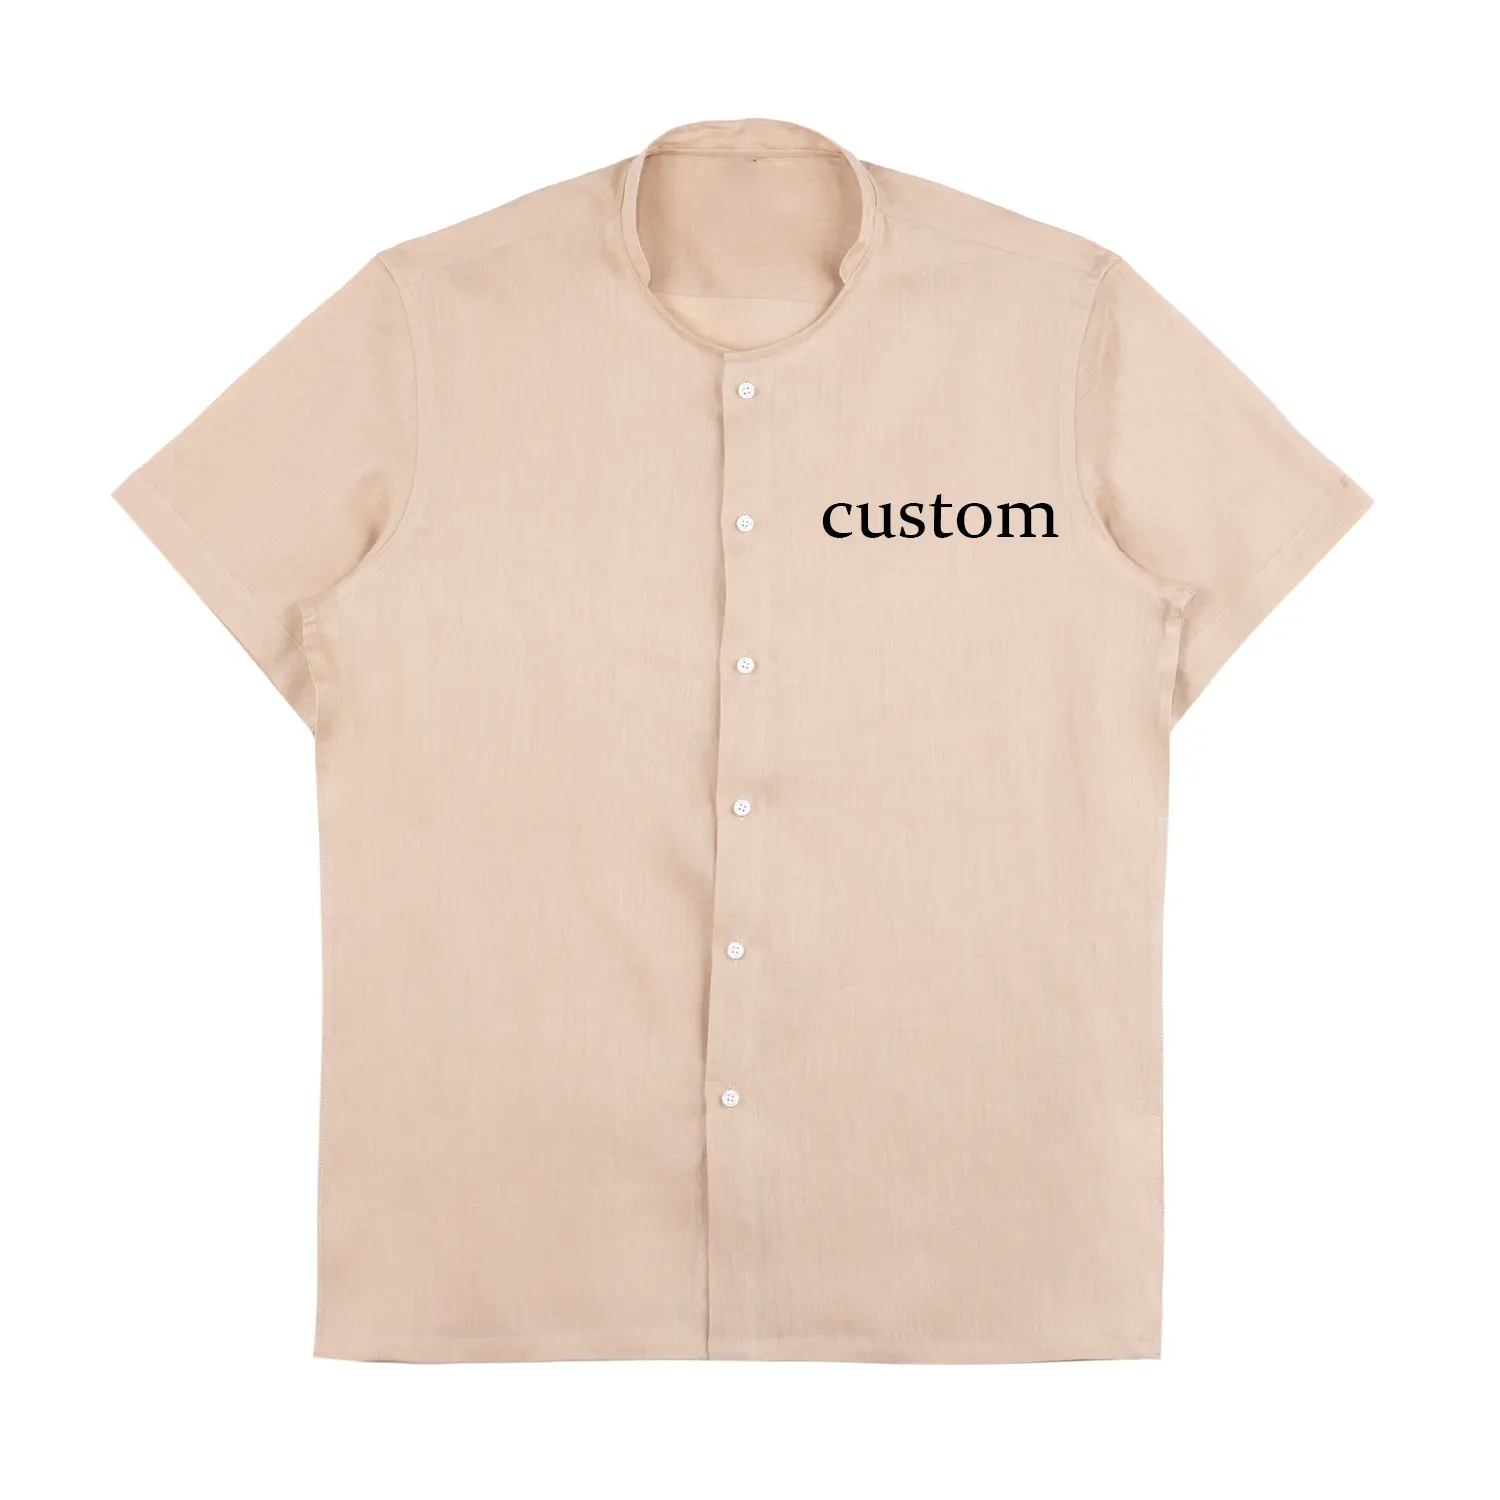 Custom Linen Shirts Casual For Men Short Sleeve Button Up Beach Shirt